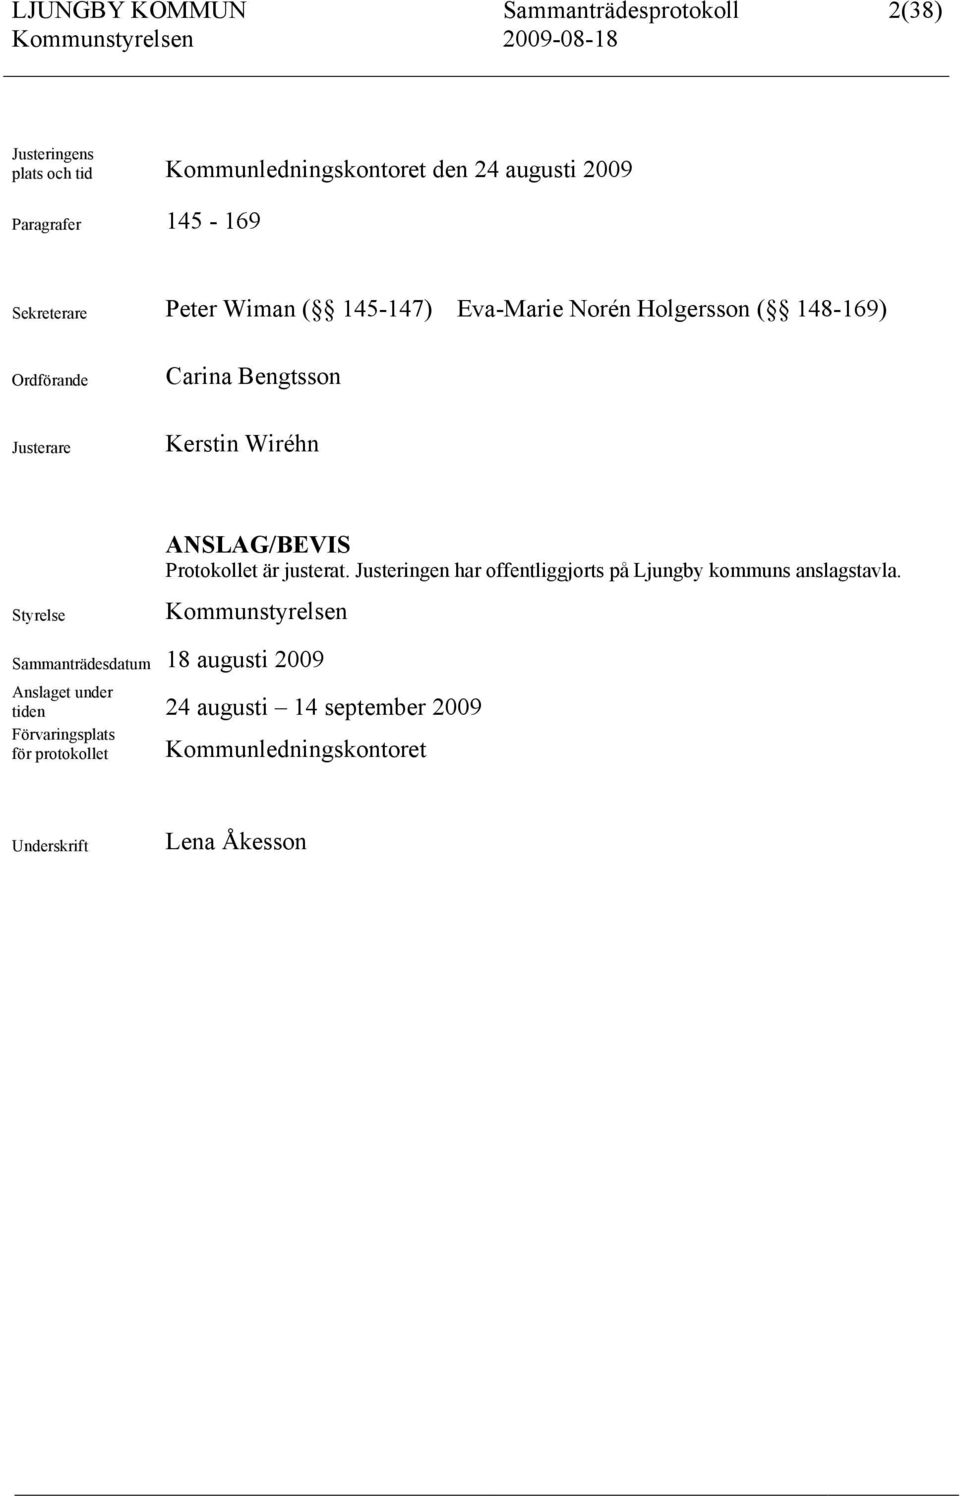 ANSLAG/BEVIS Protokollet är justerat. Justeringen har offentliggjorts på Ljungby kommuns anslagstavla.